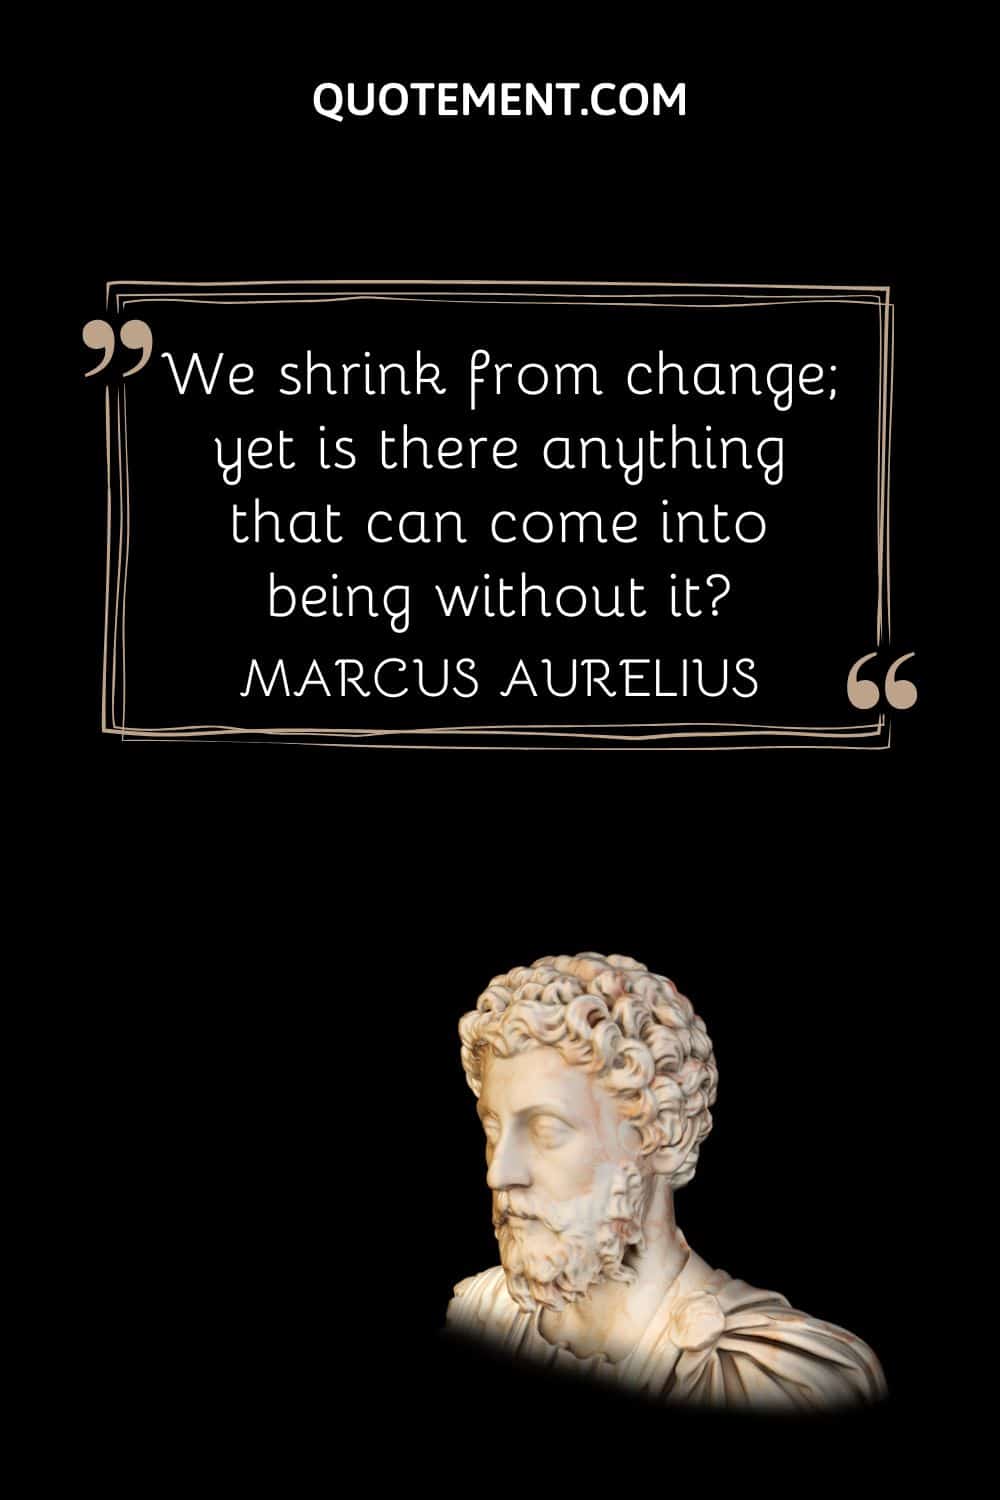 marcus aurelius statue representing marcus aurelius quote